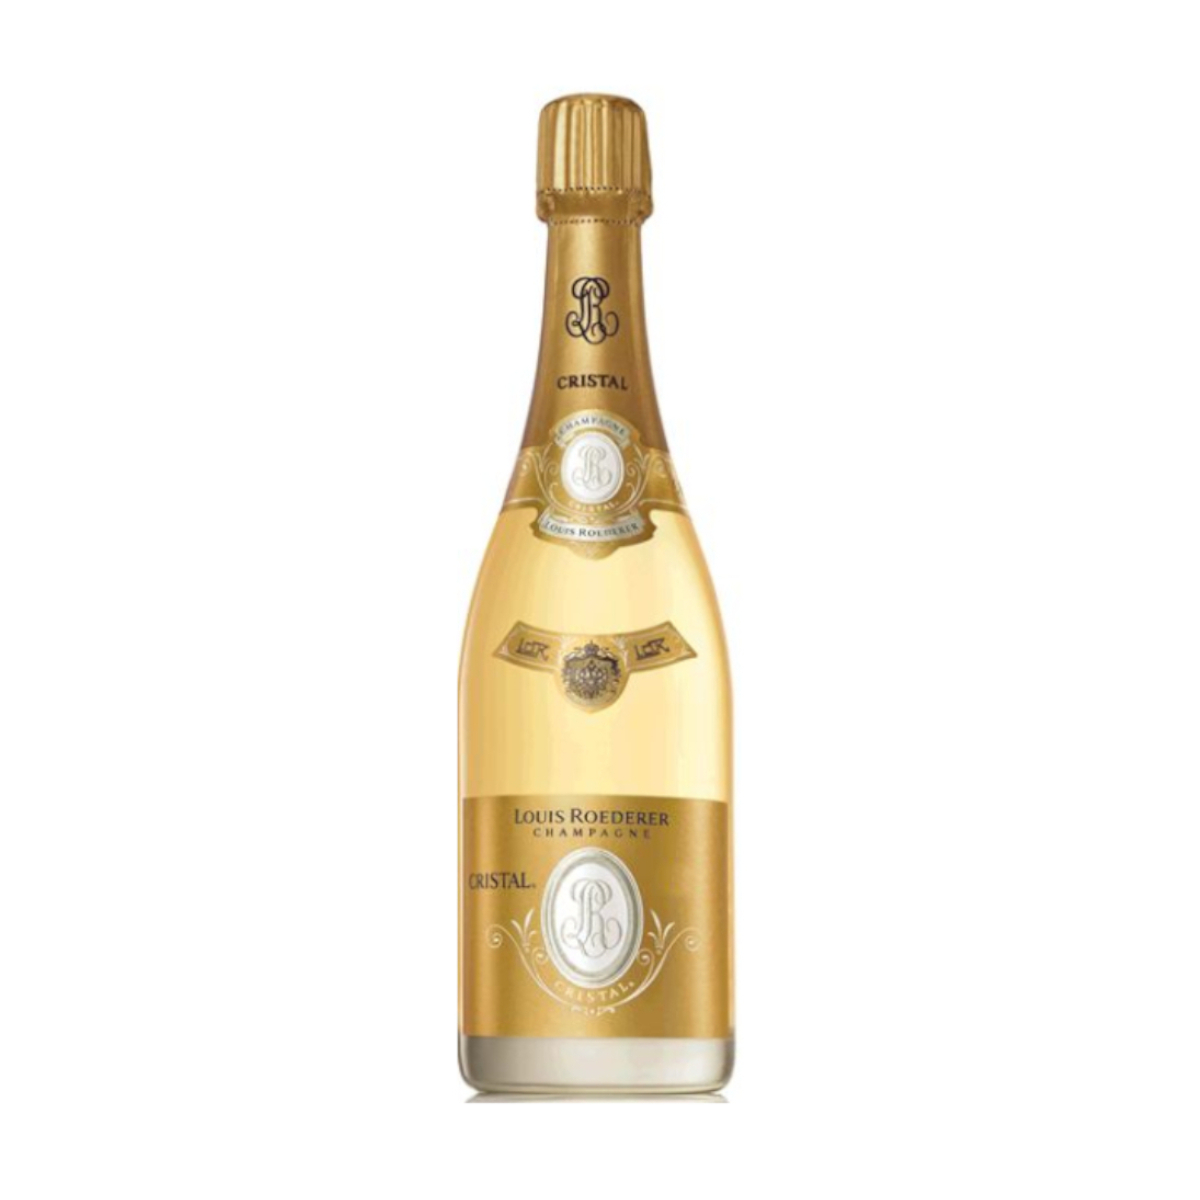 Louis Roederer Cristal, Brut Champagne Louis Roederer (0,75 l)